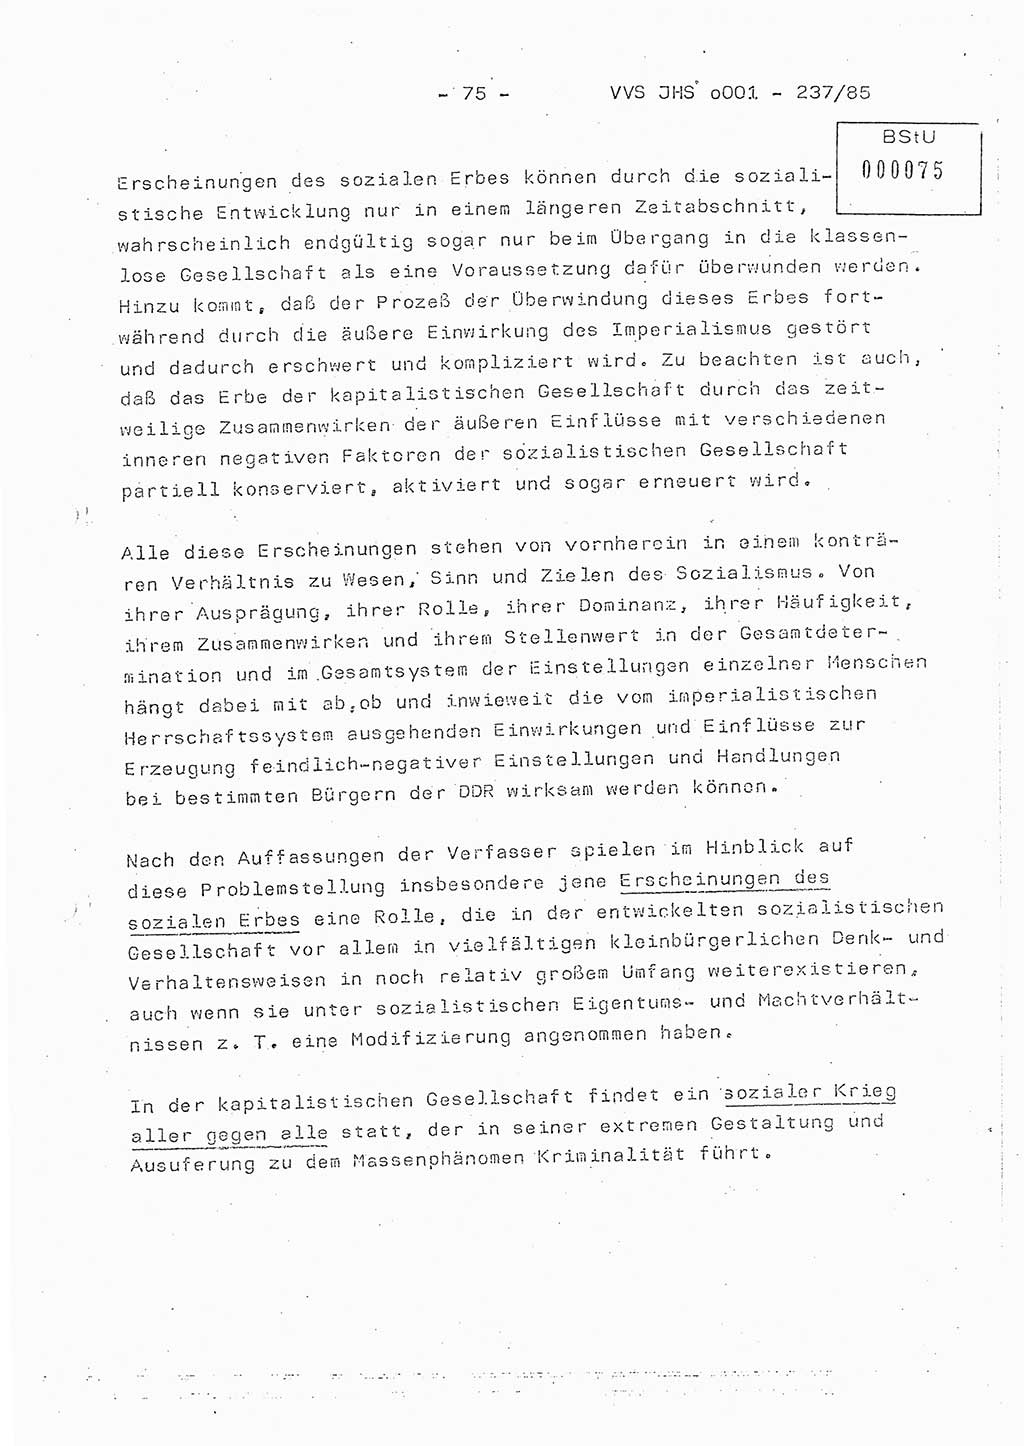 Dissertation Oberstleutnant Peter Jakulski (JHS), Oberstleutnat Christian Rudolph (HA Ⅸ), Major Horst Böttger (ZMD), Major Wolfgang Grüneberg (JHS), Major Albert Meutsch (JHS), Ministerium für Staatssicherheit (MfS) [Deutsche Demokratische Republik (DDR)], Juristische Hochschule (JHS), Vertrauliche Verschlußsache (VVS) o001-237/85, Potsdam 1985, Seite 75 (Diss. MfS DDR JHS VVS o001-237/85 1985, S. 75)